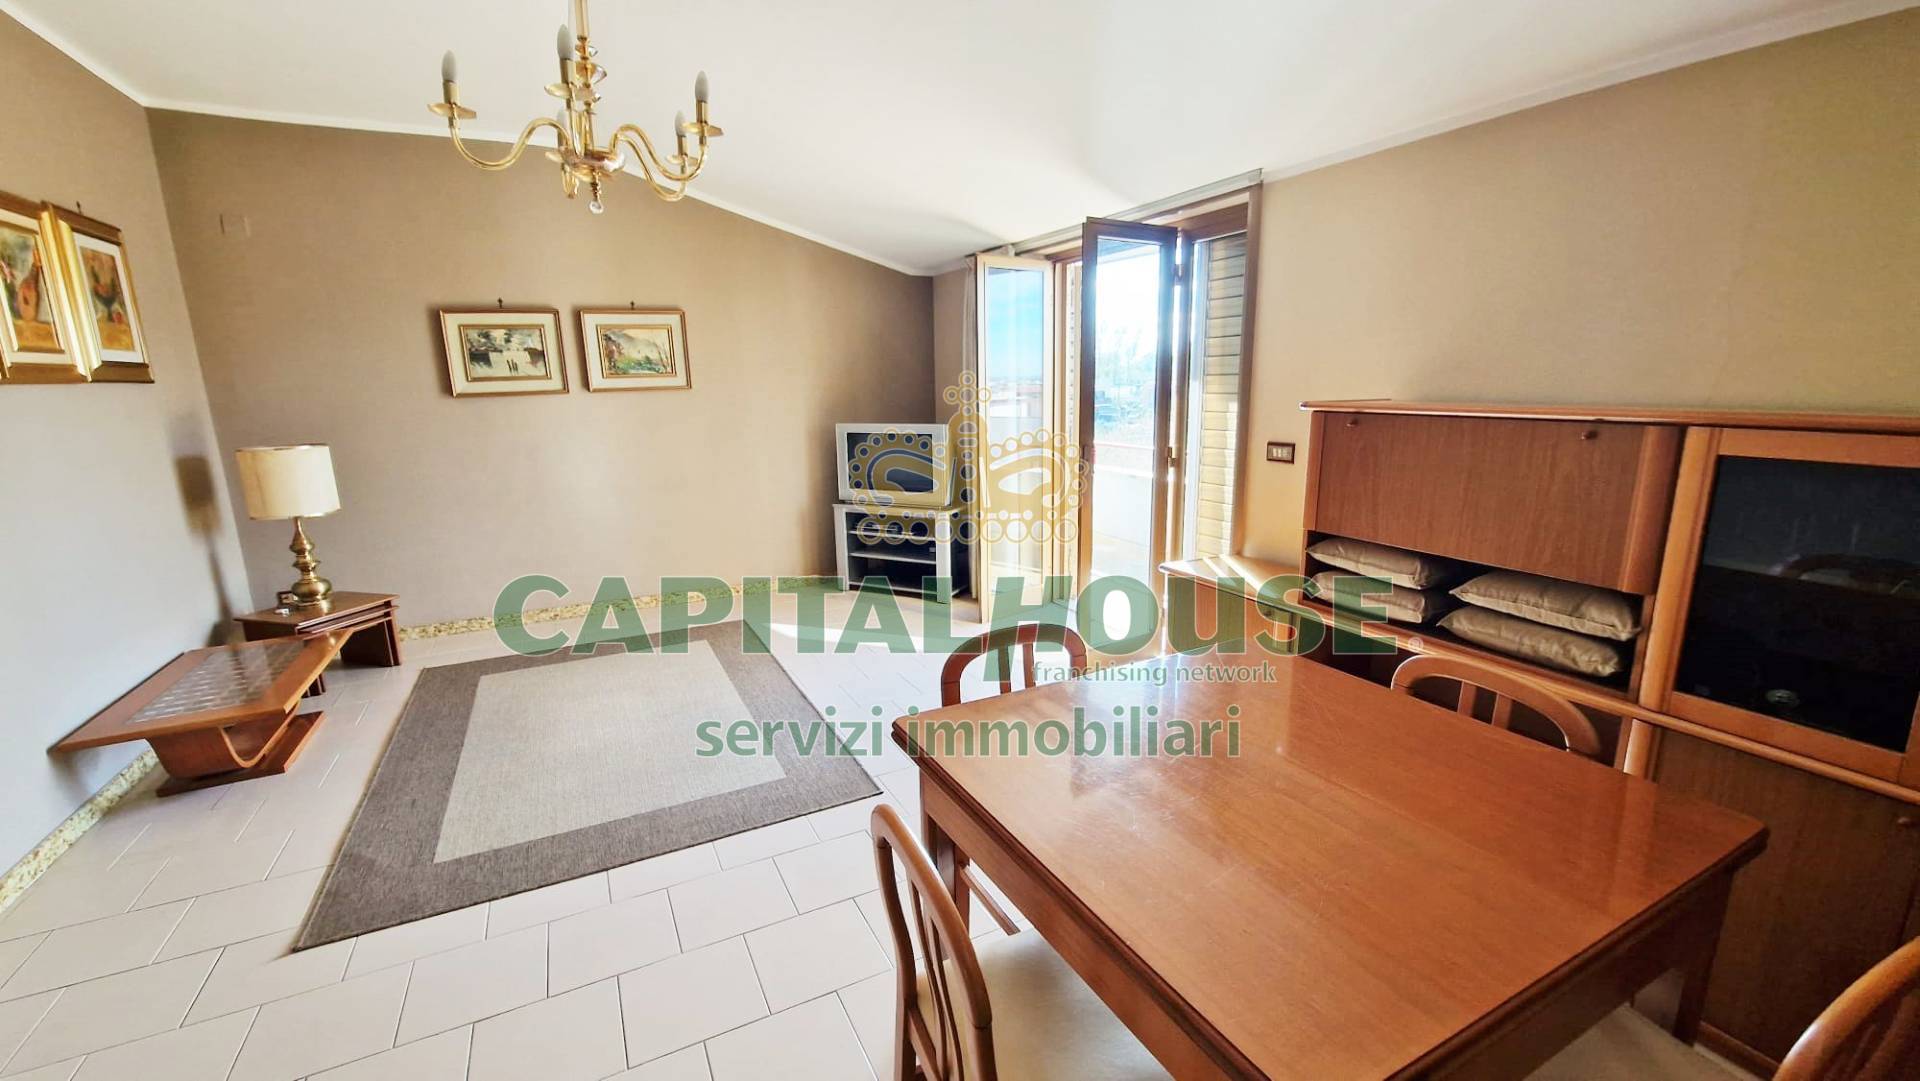 Appartamento in vendita a Cicciano, 4 locali, prezzo € 97.000 | CambioCasa.it